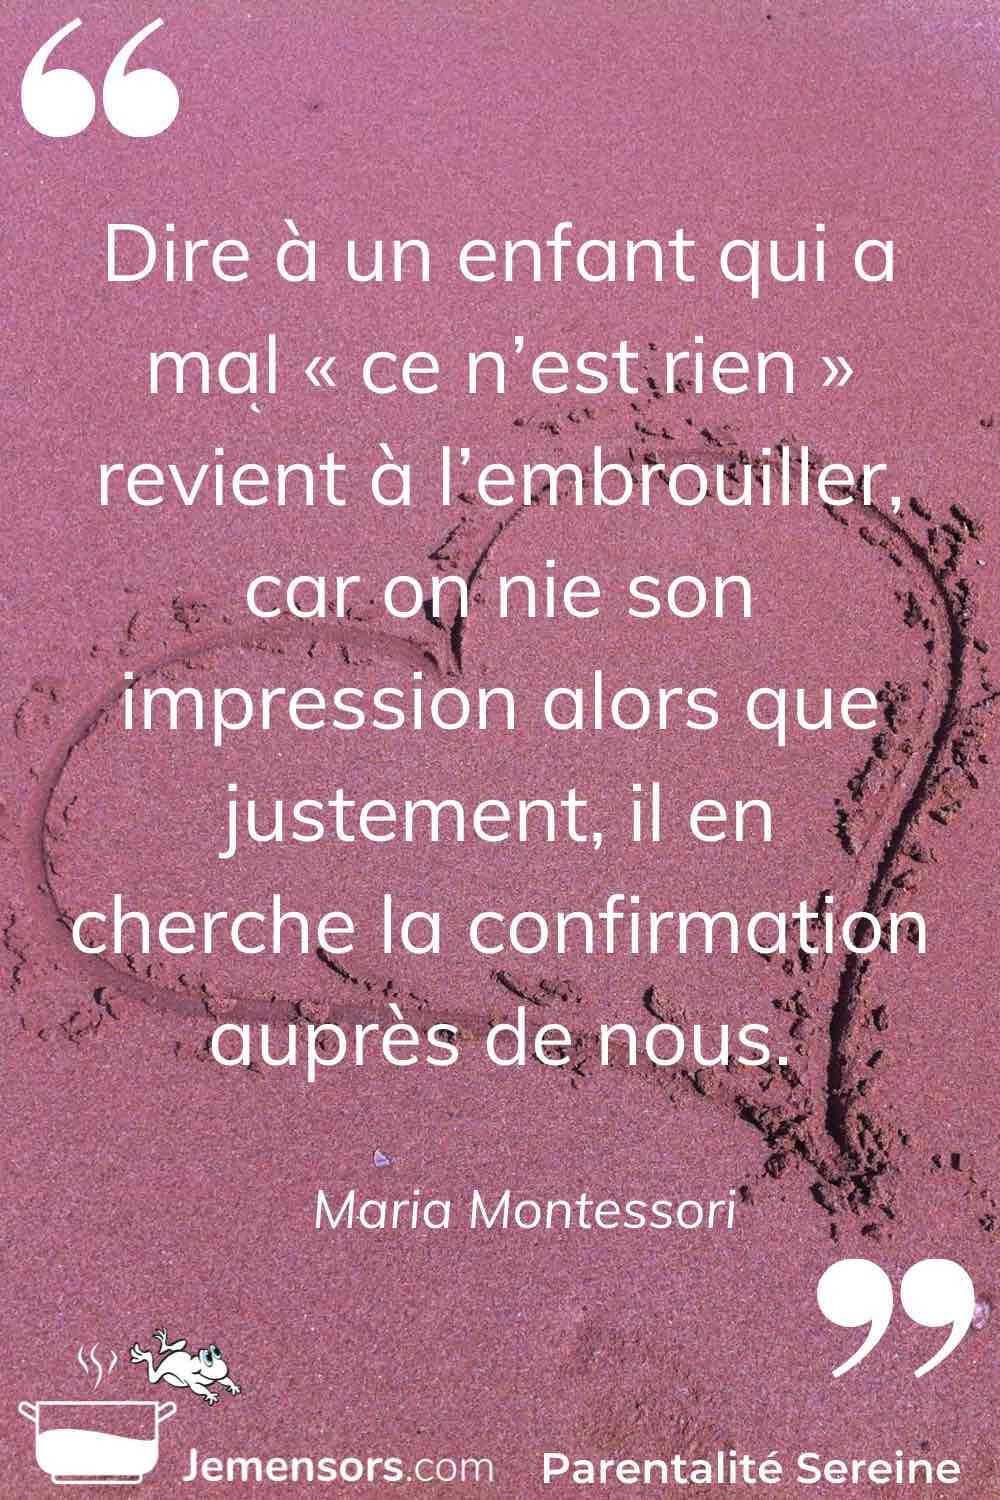 “Dire à un enfant qui a mal « ce n’est rien » revient à l’embrouiller, car on nie son impression alors que justement, il en cherche la confirmation auprès de nous.” Maria Montessori